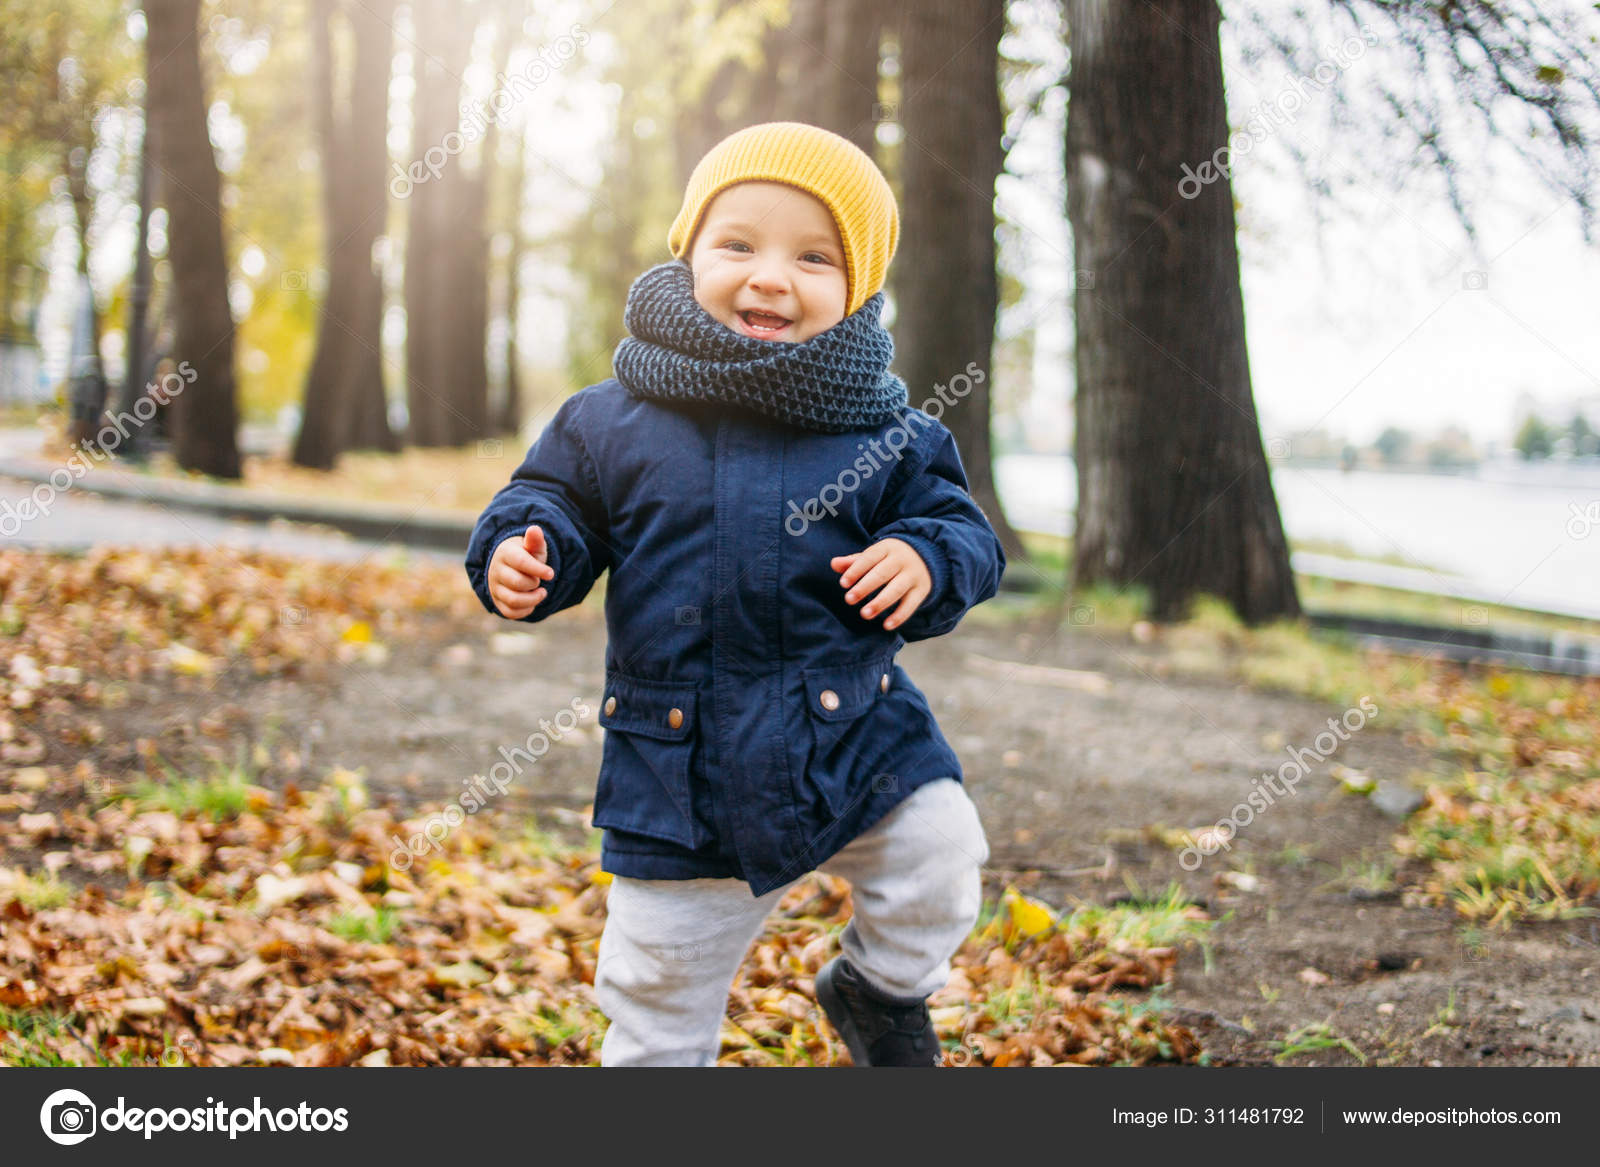 Lindo bebé feliz niño en ropa casual de moda en el parque natural de otoño: fotografía de © GalinaZhigalova #311481792 | Depositphotos